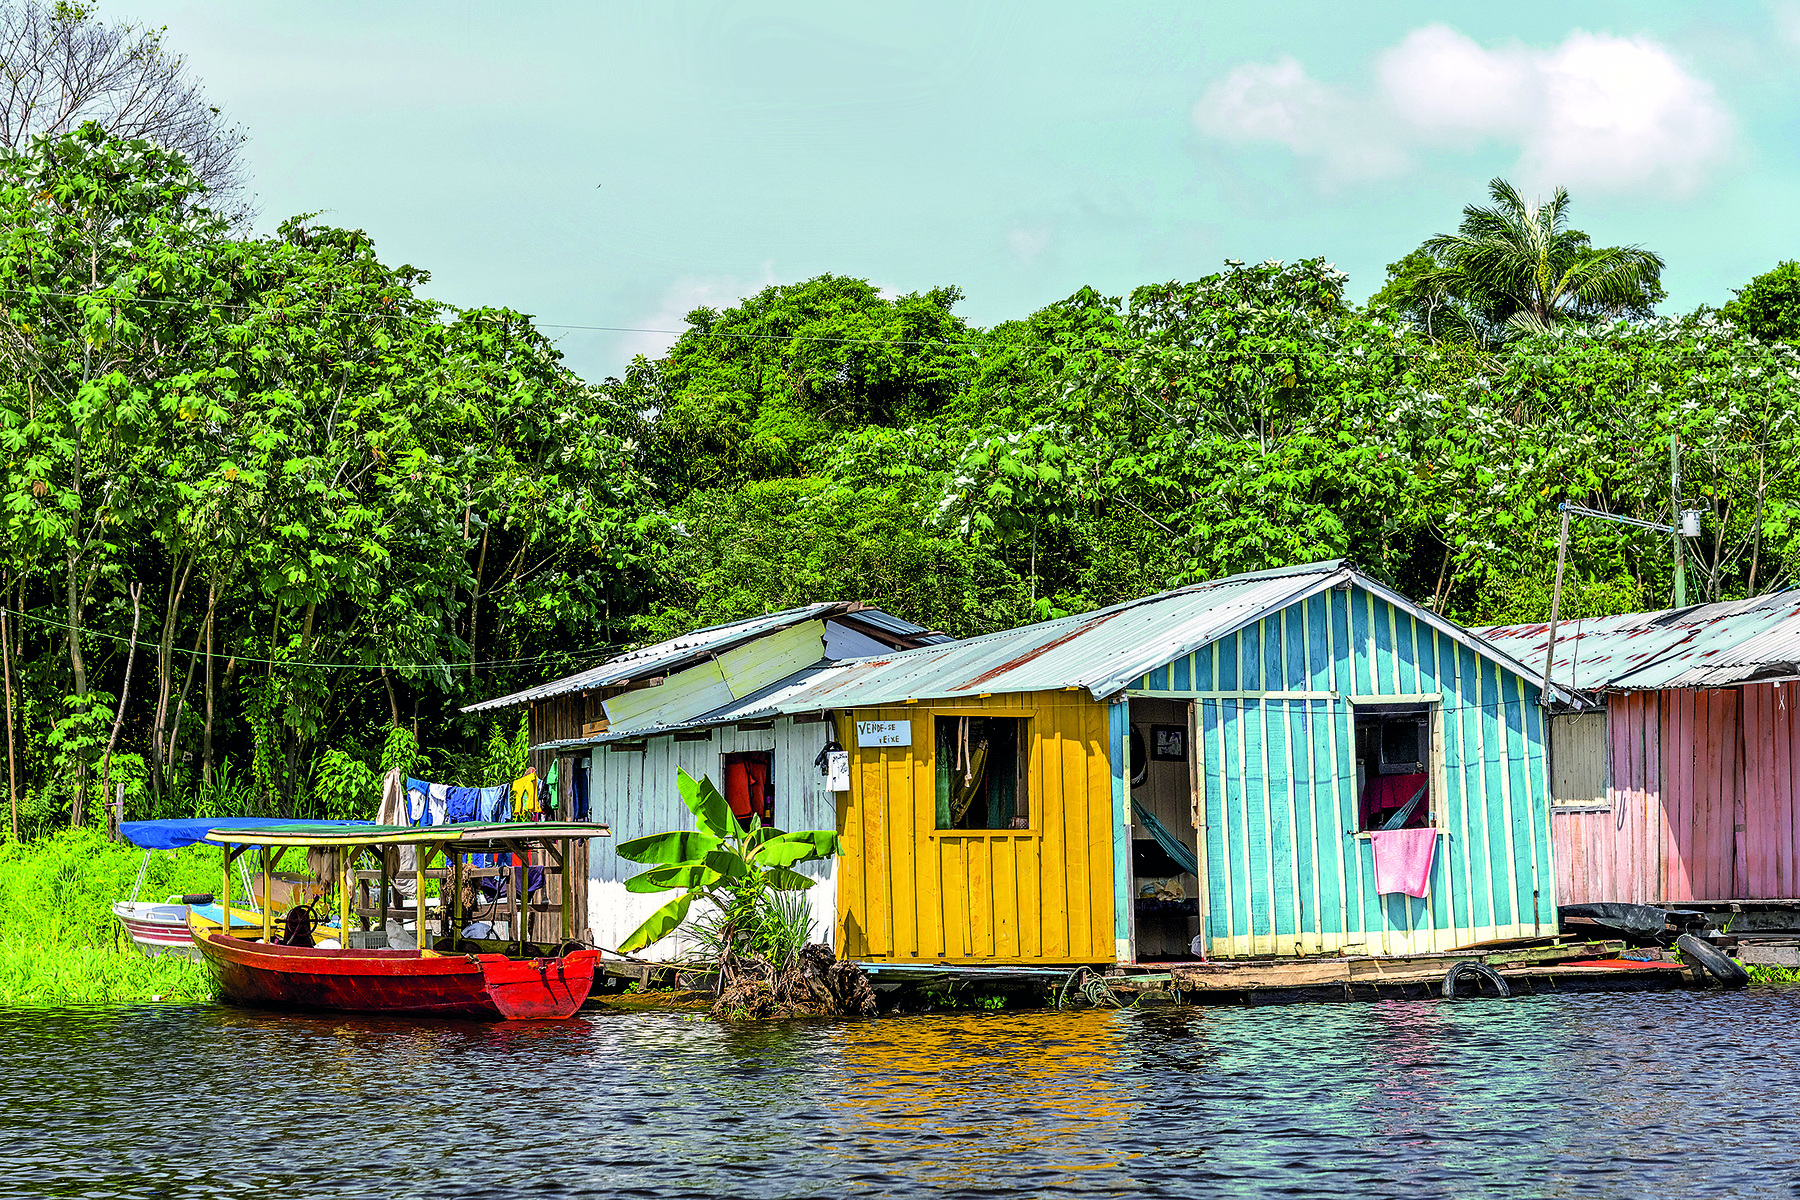 Fotografia. Imagem de casas de madeira coloridas construídas sobre as águas escuras de um rio. À esquerda, pequena embarcação. Ao fundo, vegetação verde e abundante.